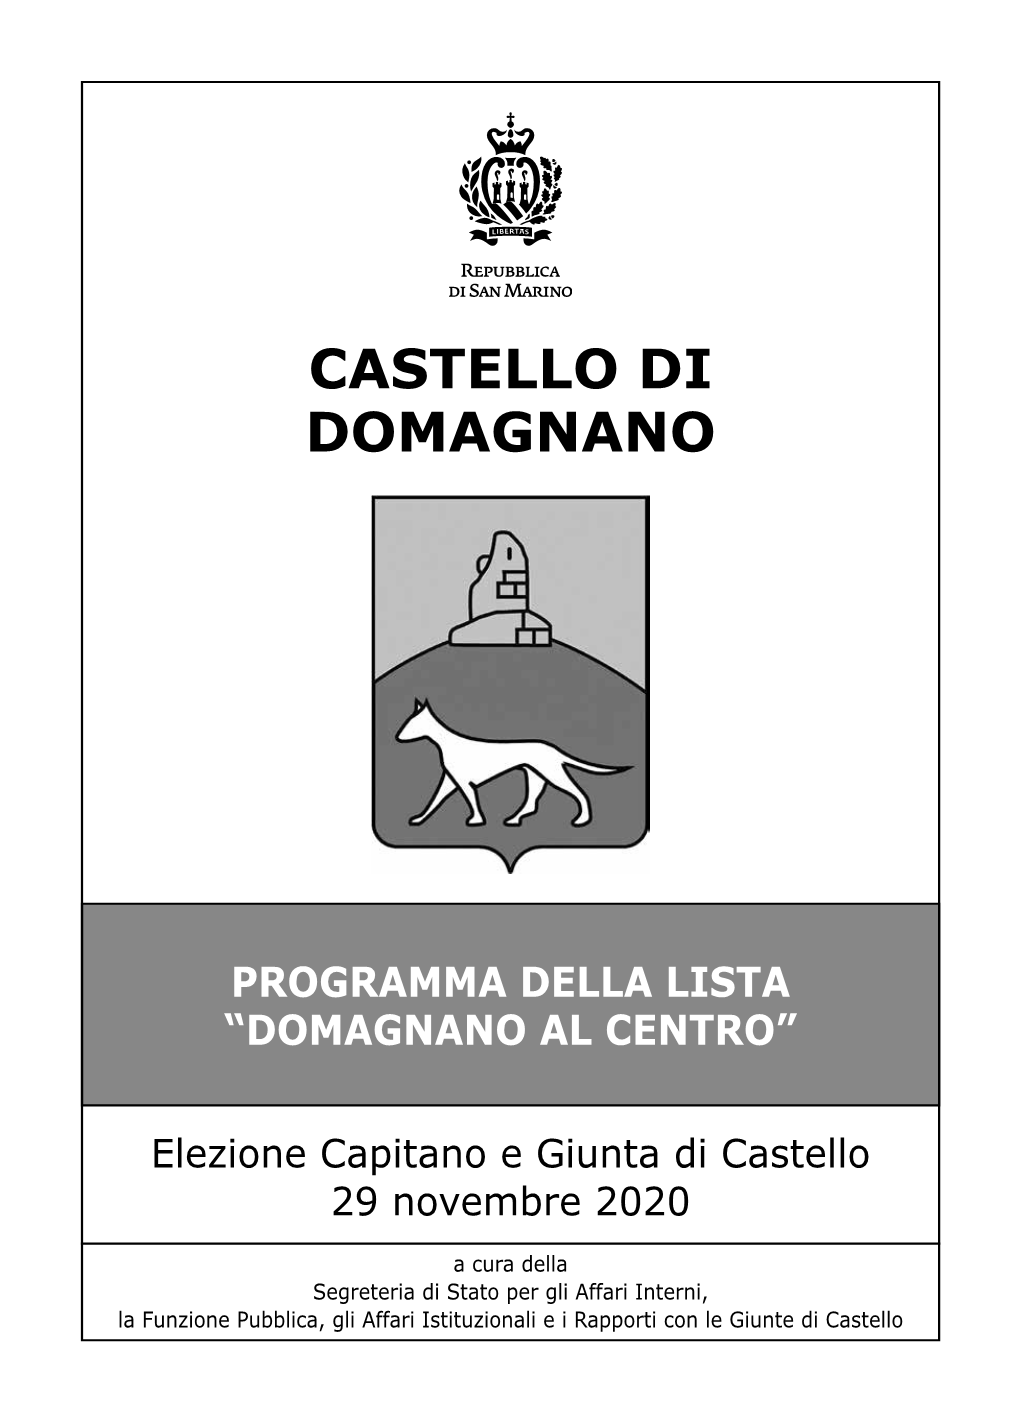 Castello Di Domagnano